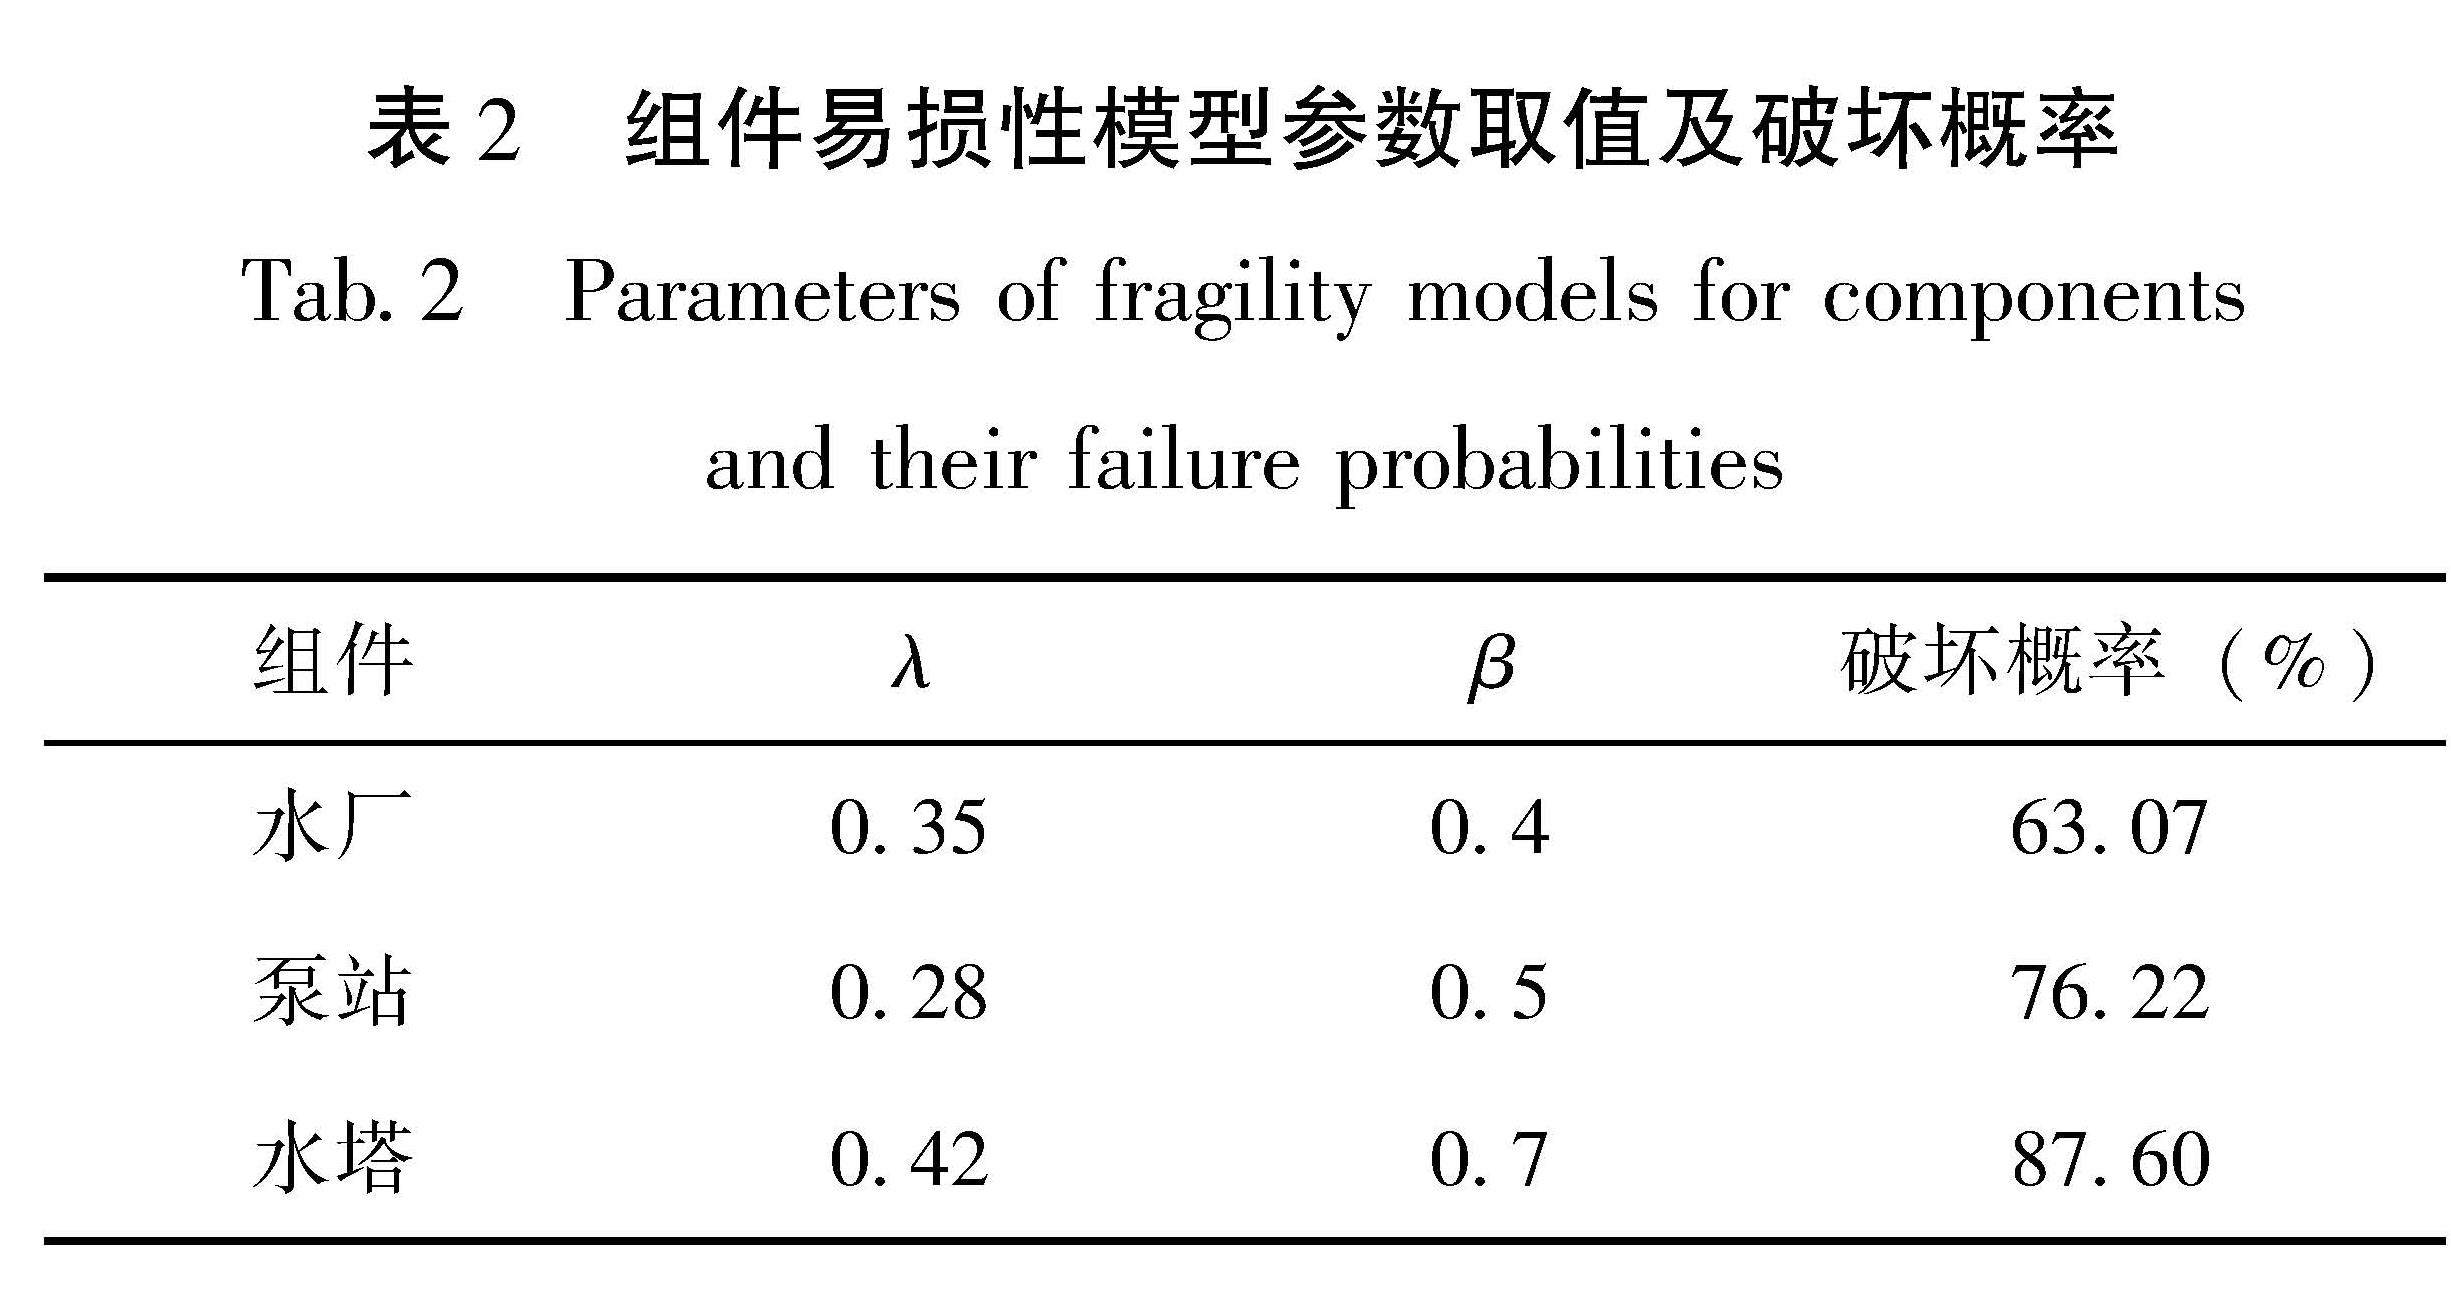 表2 组件易损性模型参数取值及破坏概率<br/>Tab.2 Parameters of fragility models for components and their failure probabilities